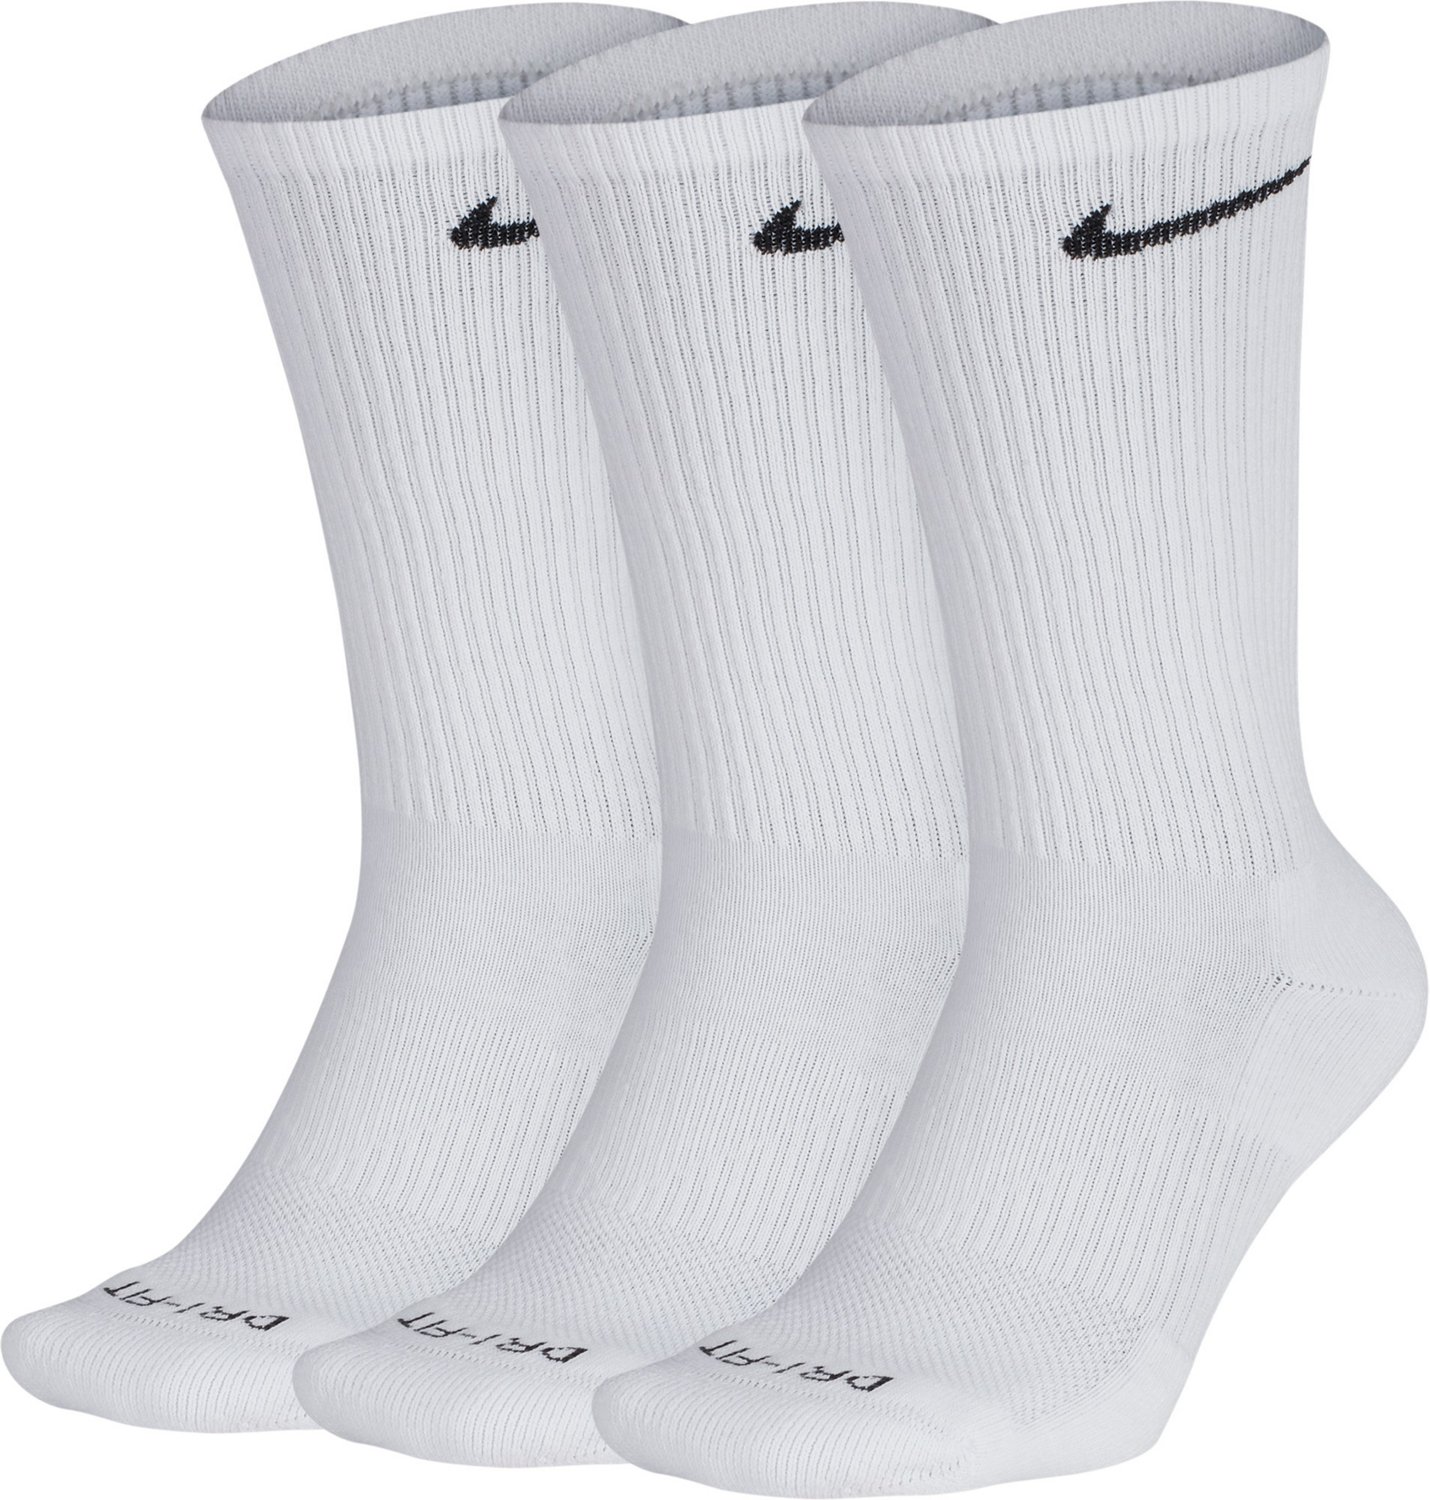 academy sports nike socks